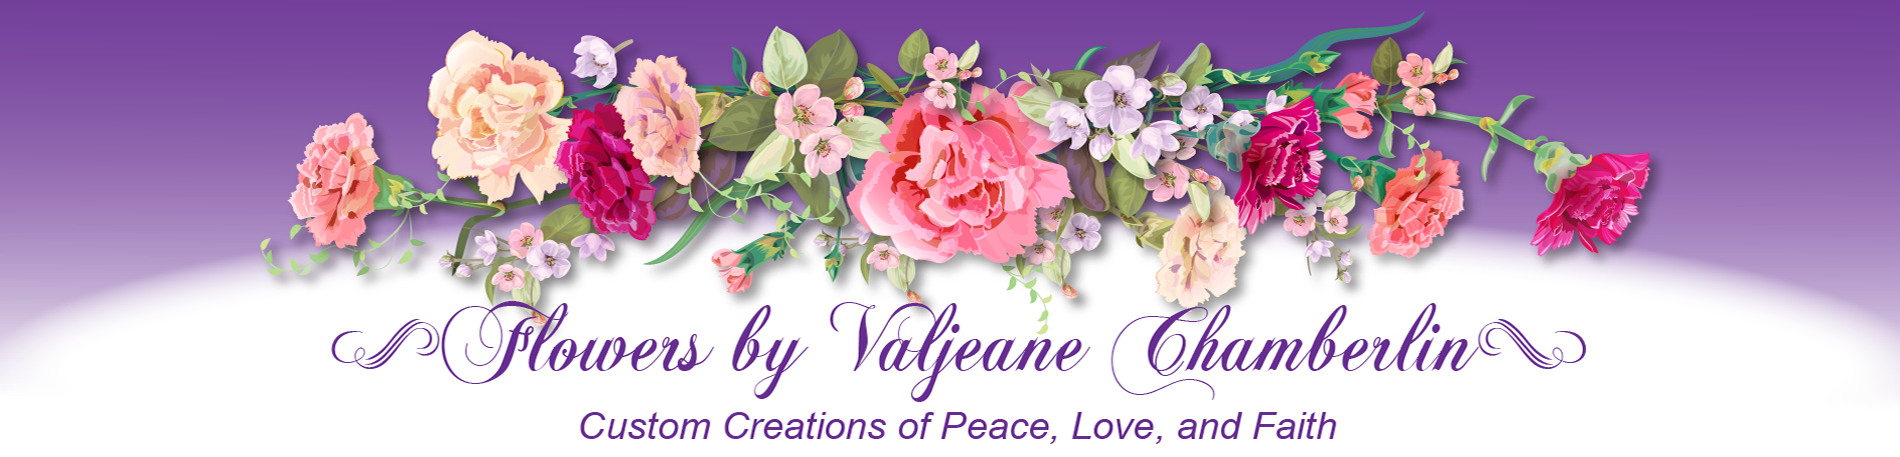 Flowers by Valjeane Header